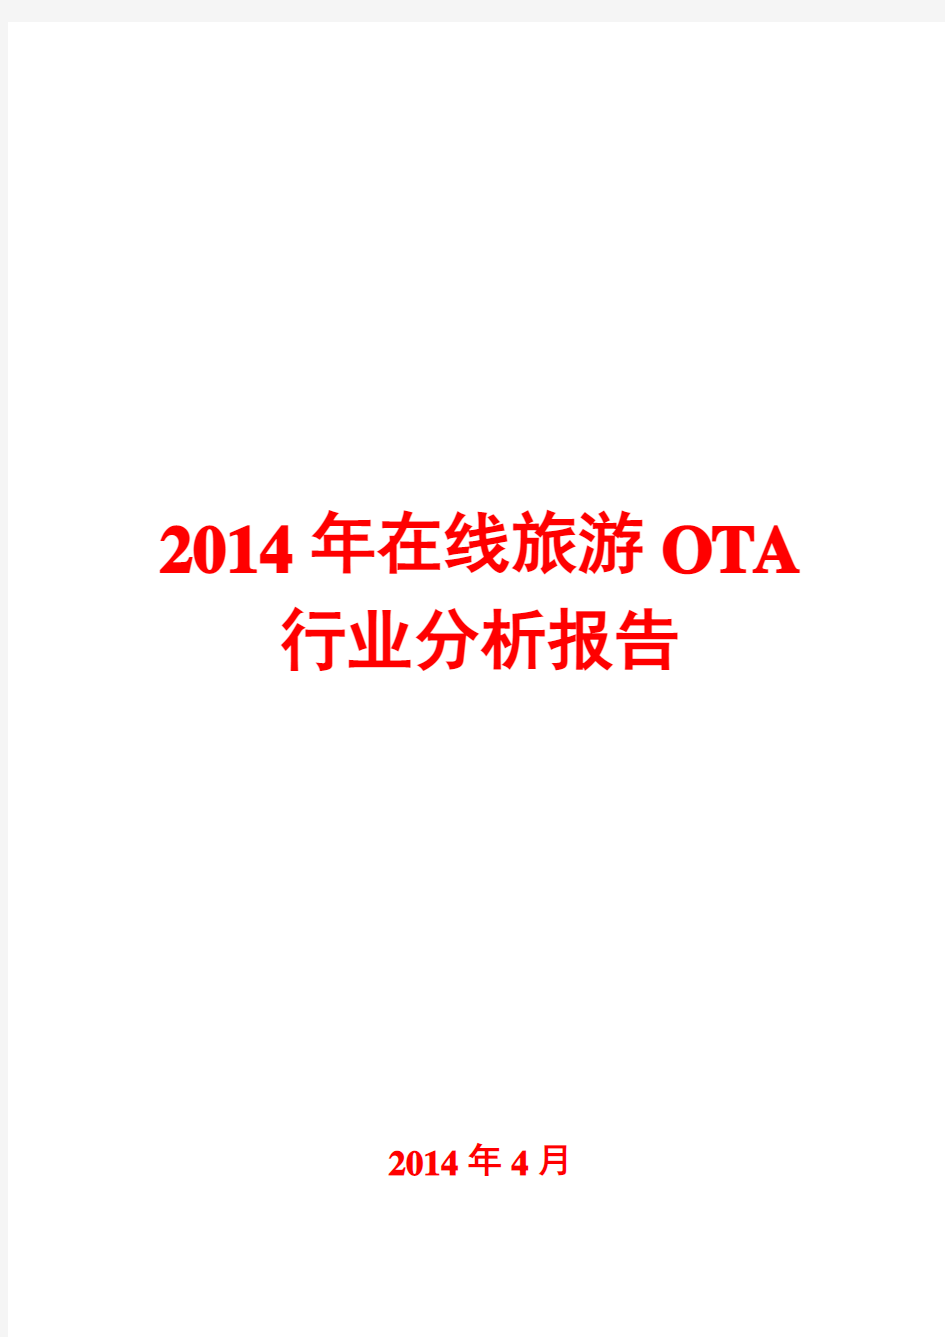 2014年在线旅游OTA行业分析报告